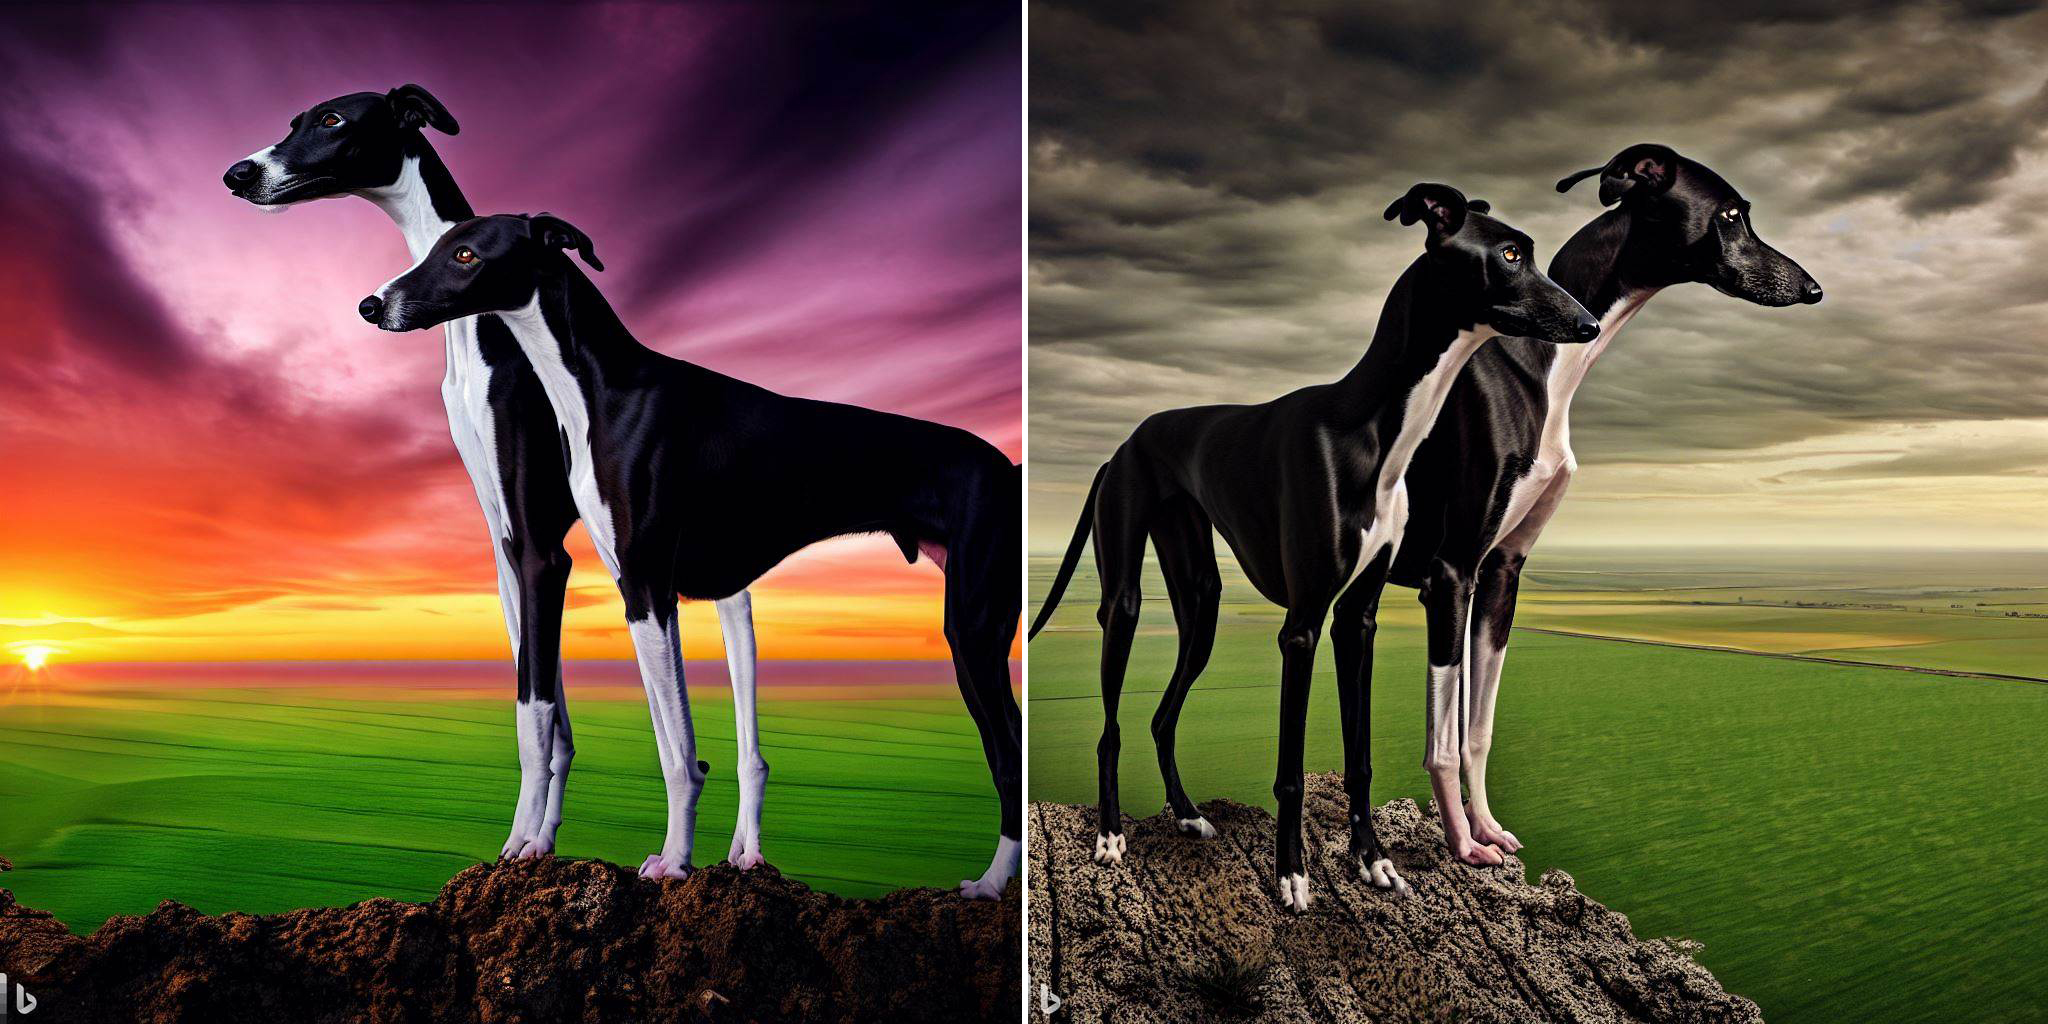 Параллельная компиляция двух изображений, сгенерированных ИИ, созданных Bing Image Creators.  На обоих изображениях показаны две черно-белые борзые, смотрящие наружу со скалы над широкой зеленой равниной.  На левом изображении небо оранжево-фиолетовое, на правом — пасмурное и угрюмое.